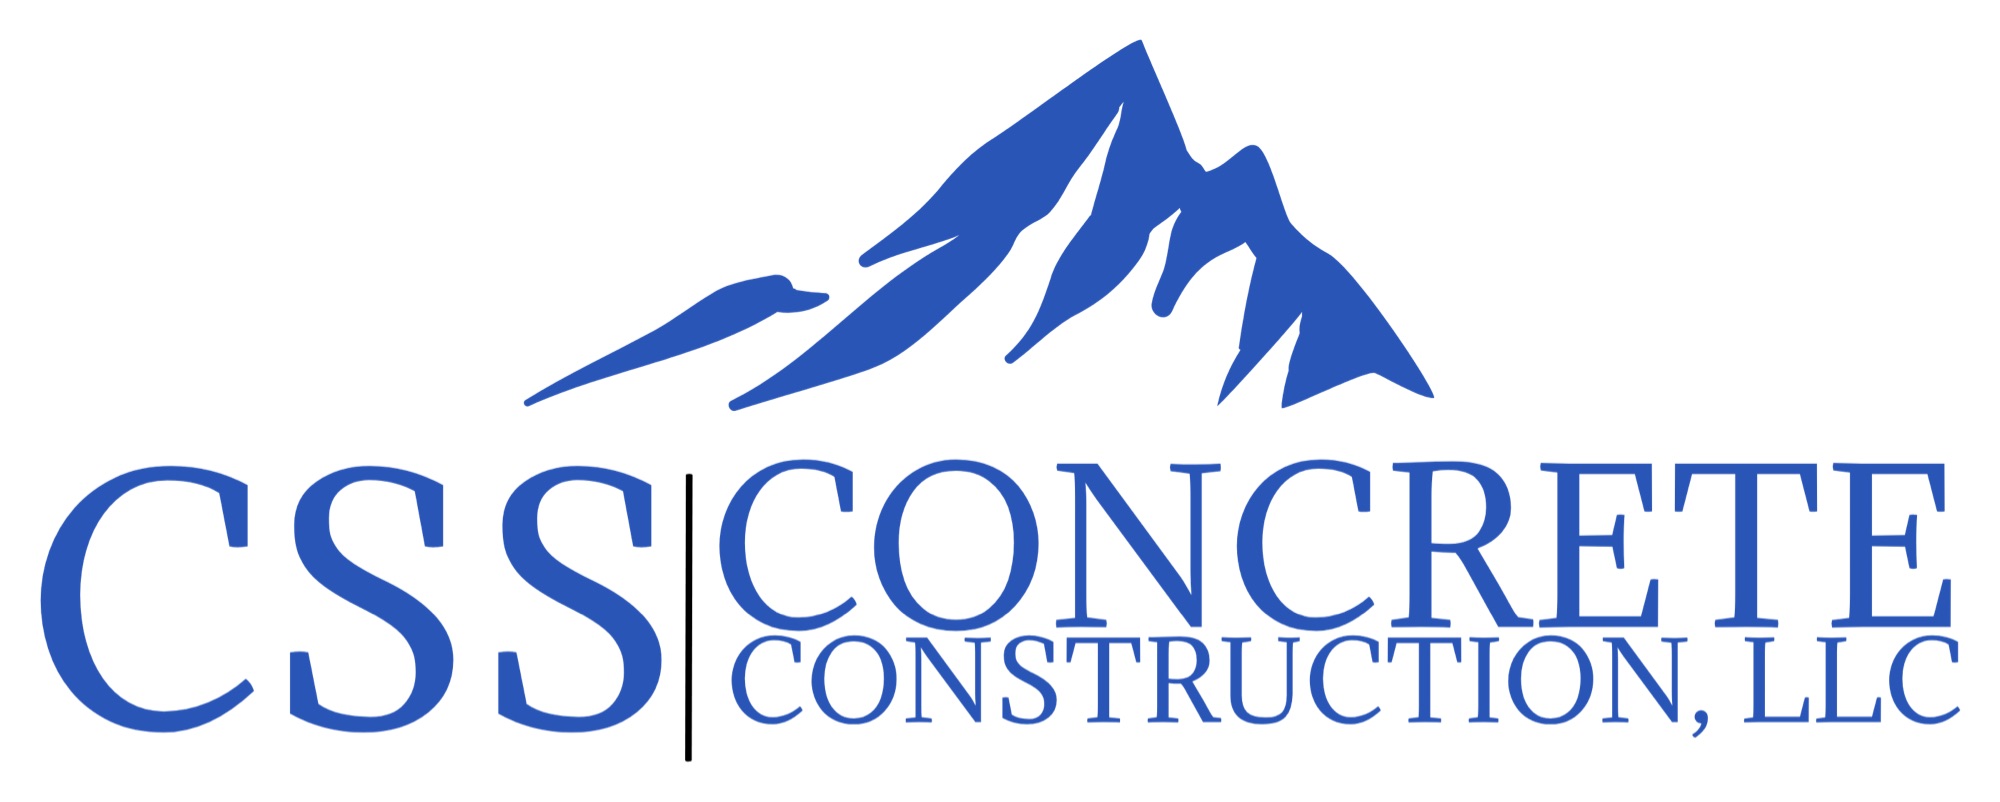 CSS Concrete Construction, LLC Logo